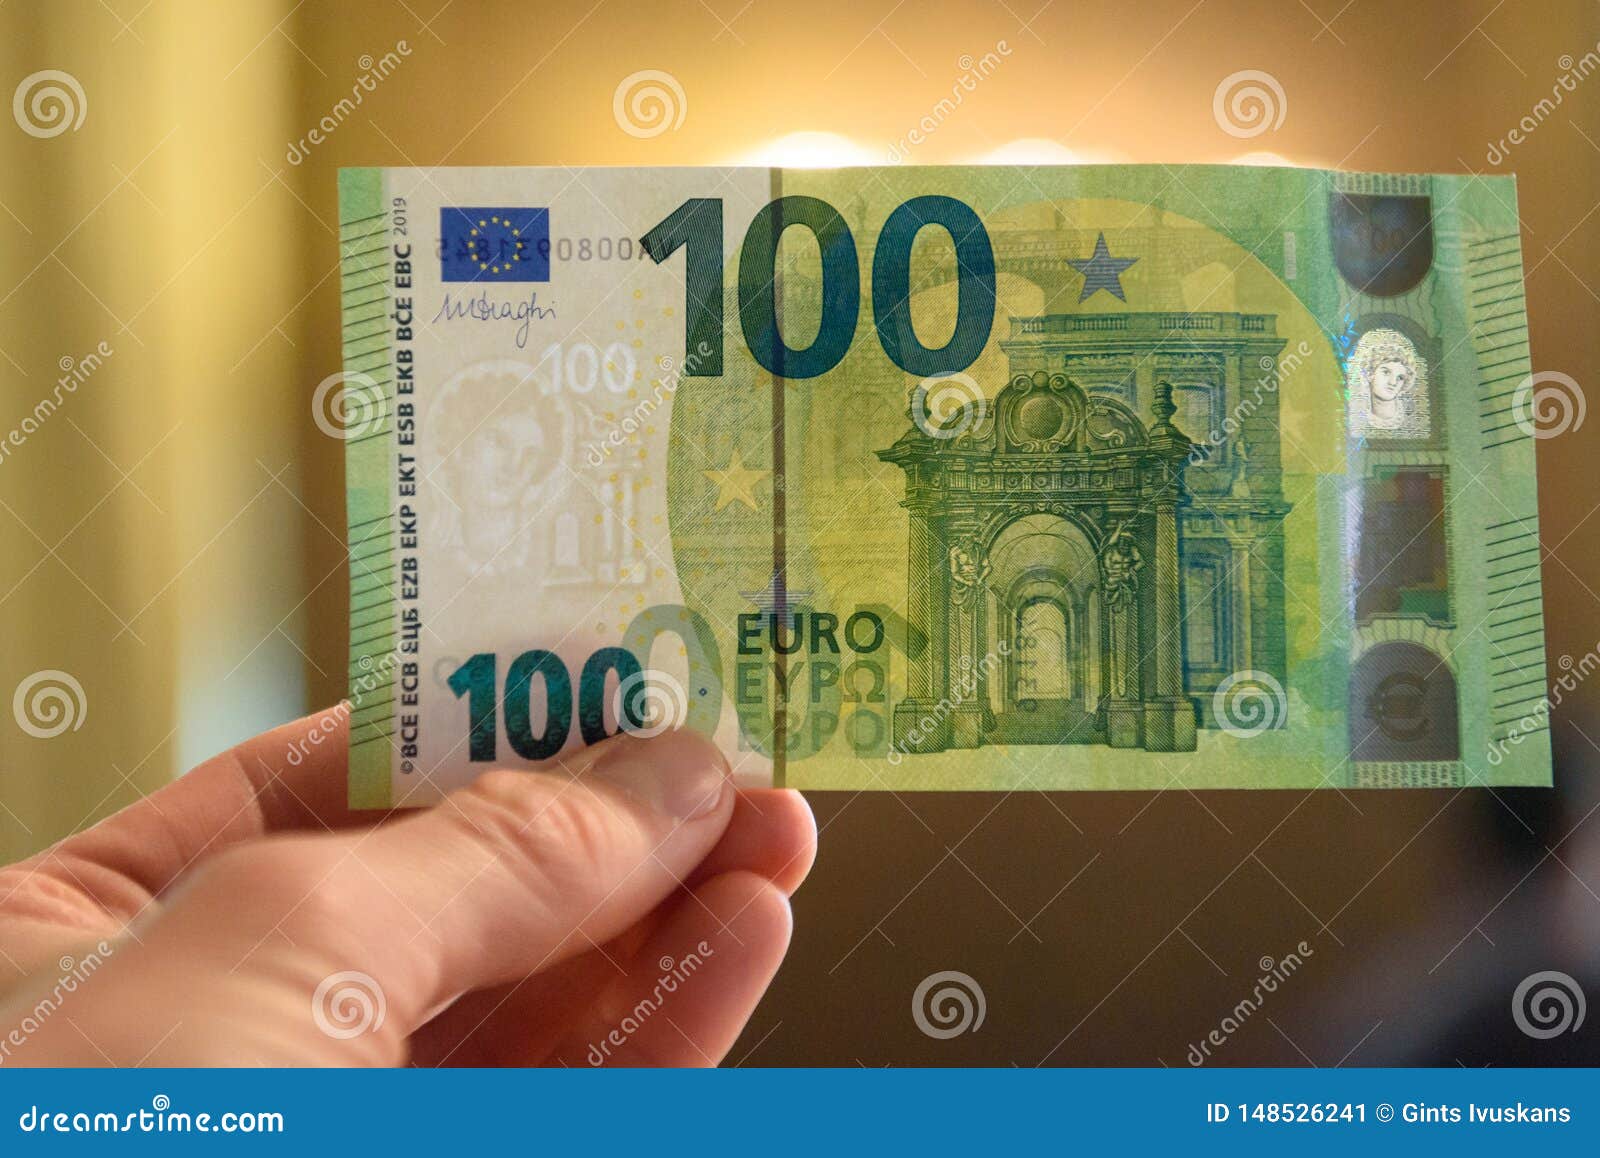 Kako prijatelju ulepšat dan - Page 2 New-euro-banknote-europa-series-riga-latvia-national-central-bank-inform-media-press-conference-banknotes-148526241